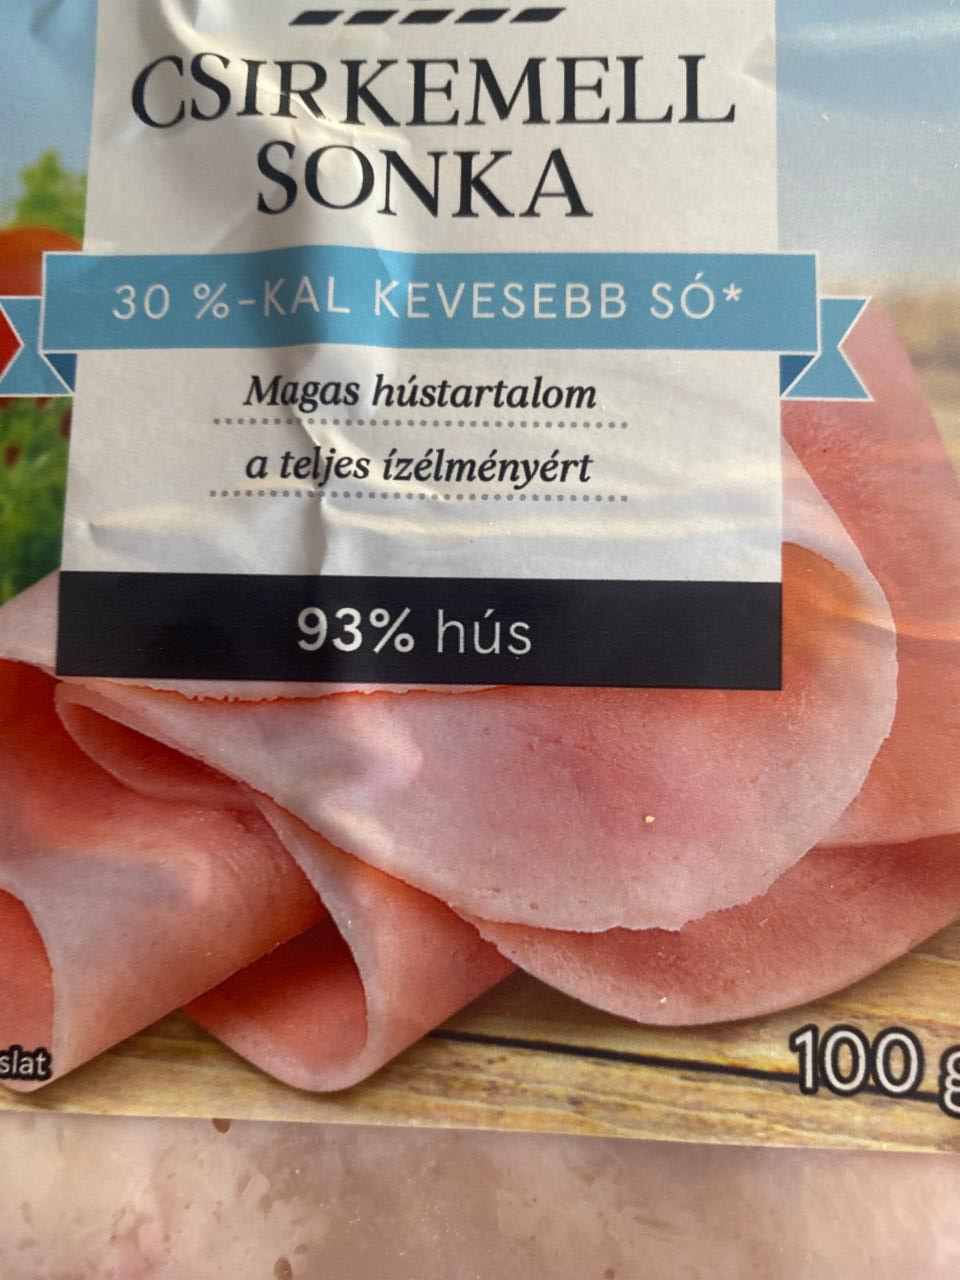 Fotografie - Kuracia Šunka 93 % mäsa Tesco